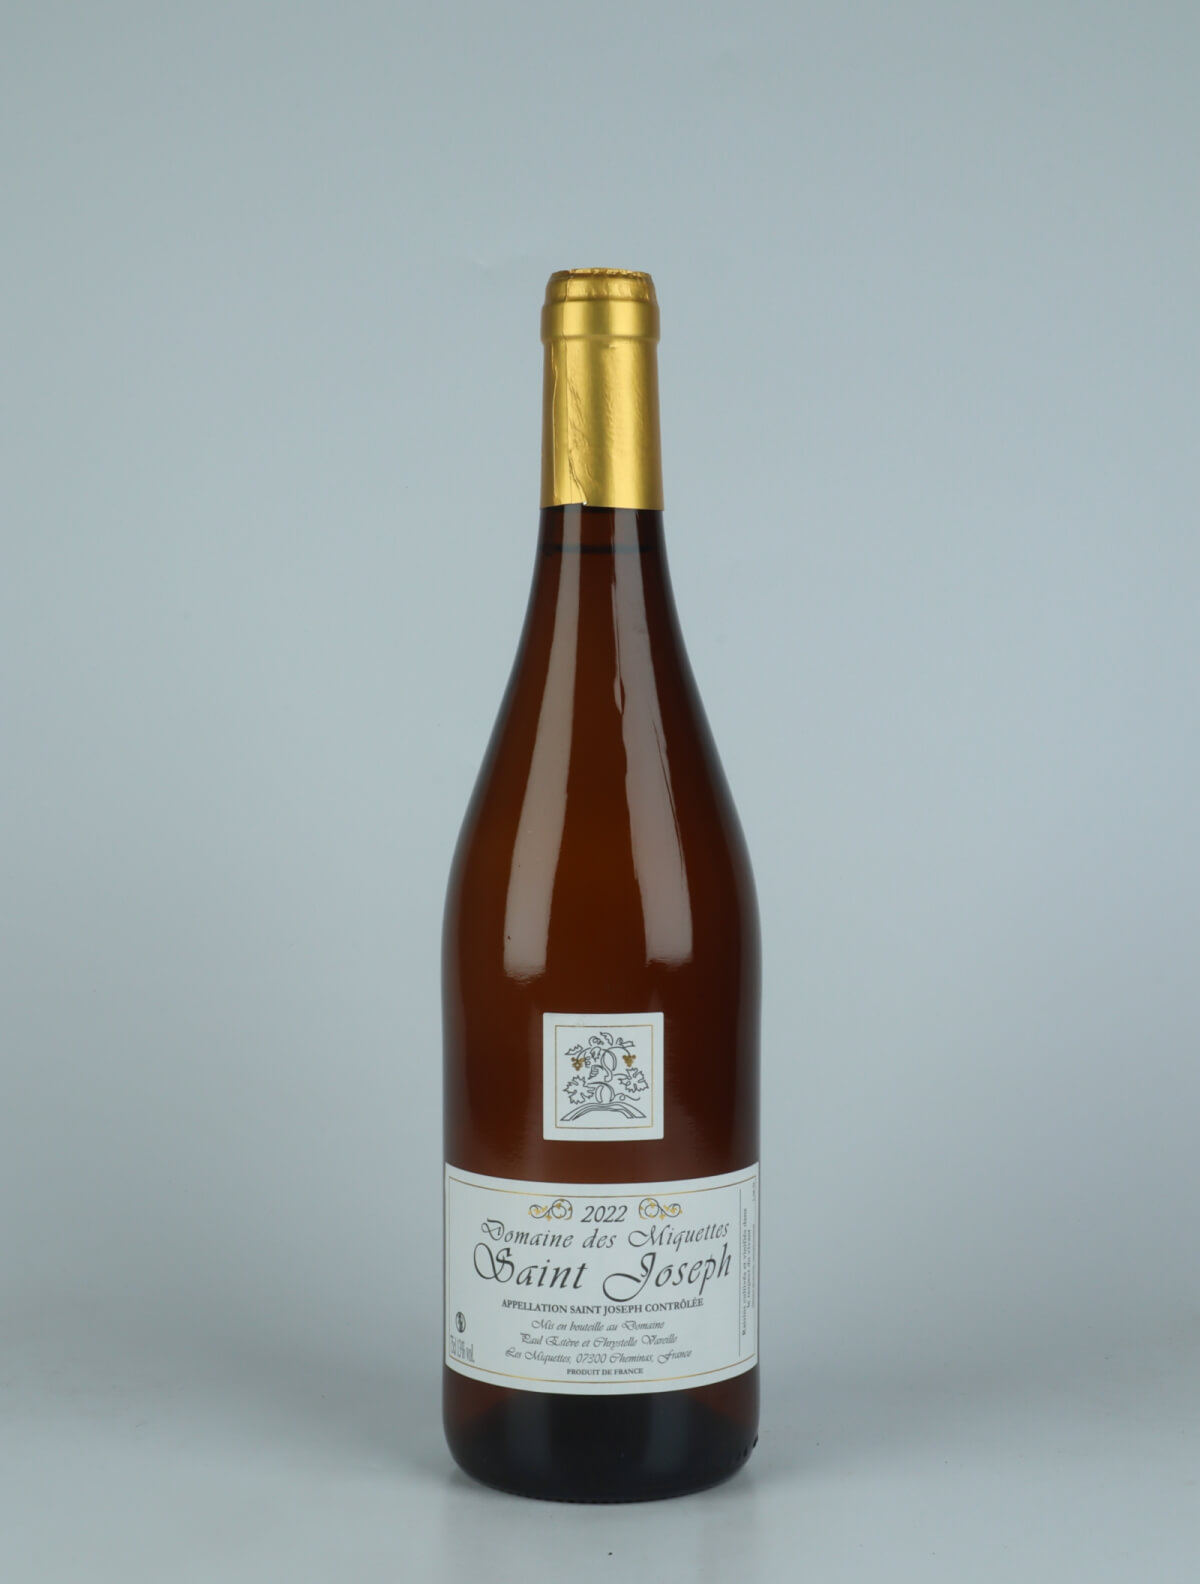 A bottle 2022 Saint-Joseph Blanc White wine from Domaine des Miquettes, Rhône in France